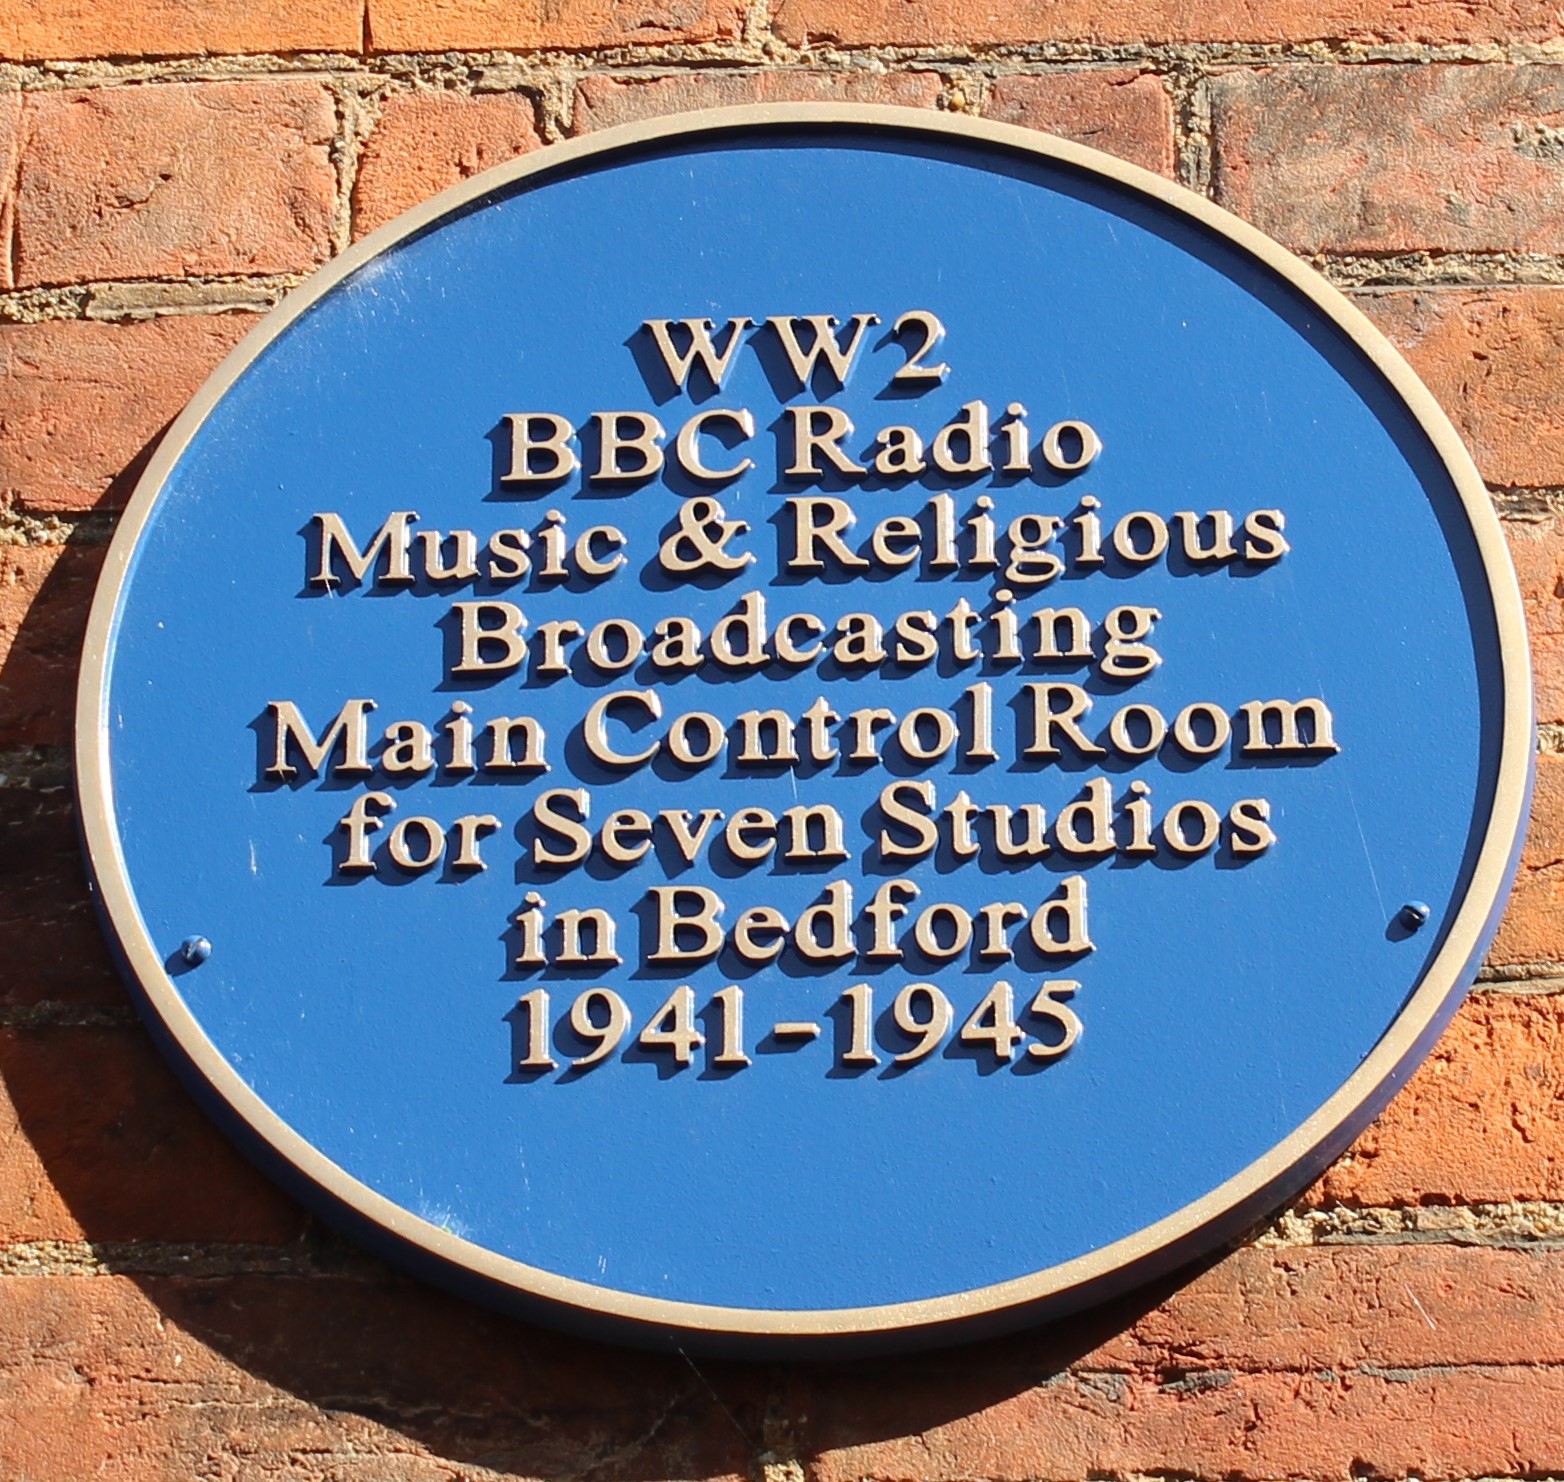 BBC Radio WW2 broadcasts commemorative plaque